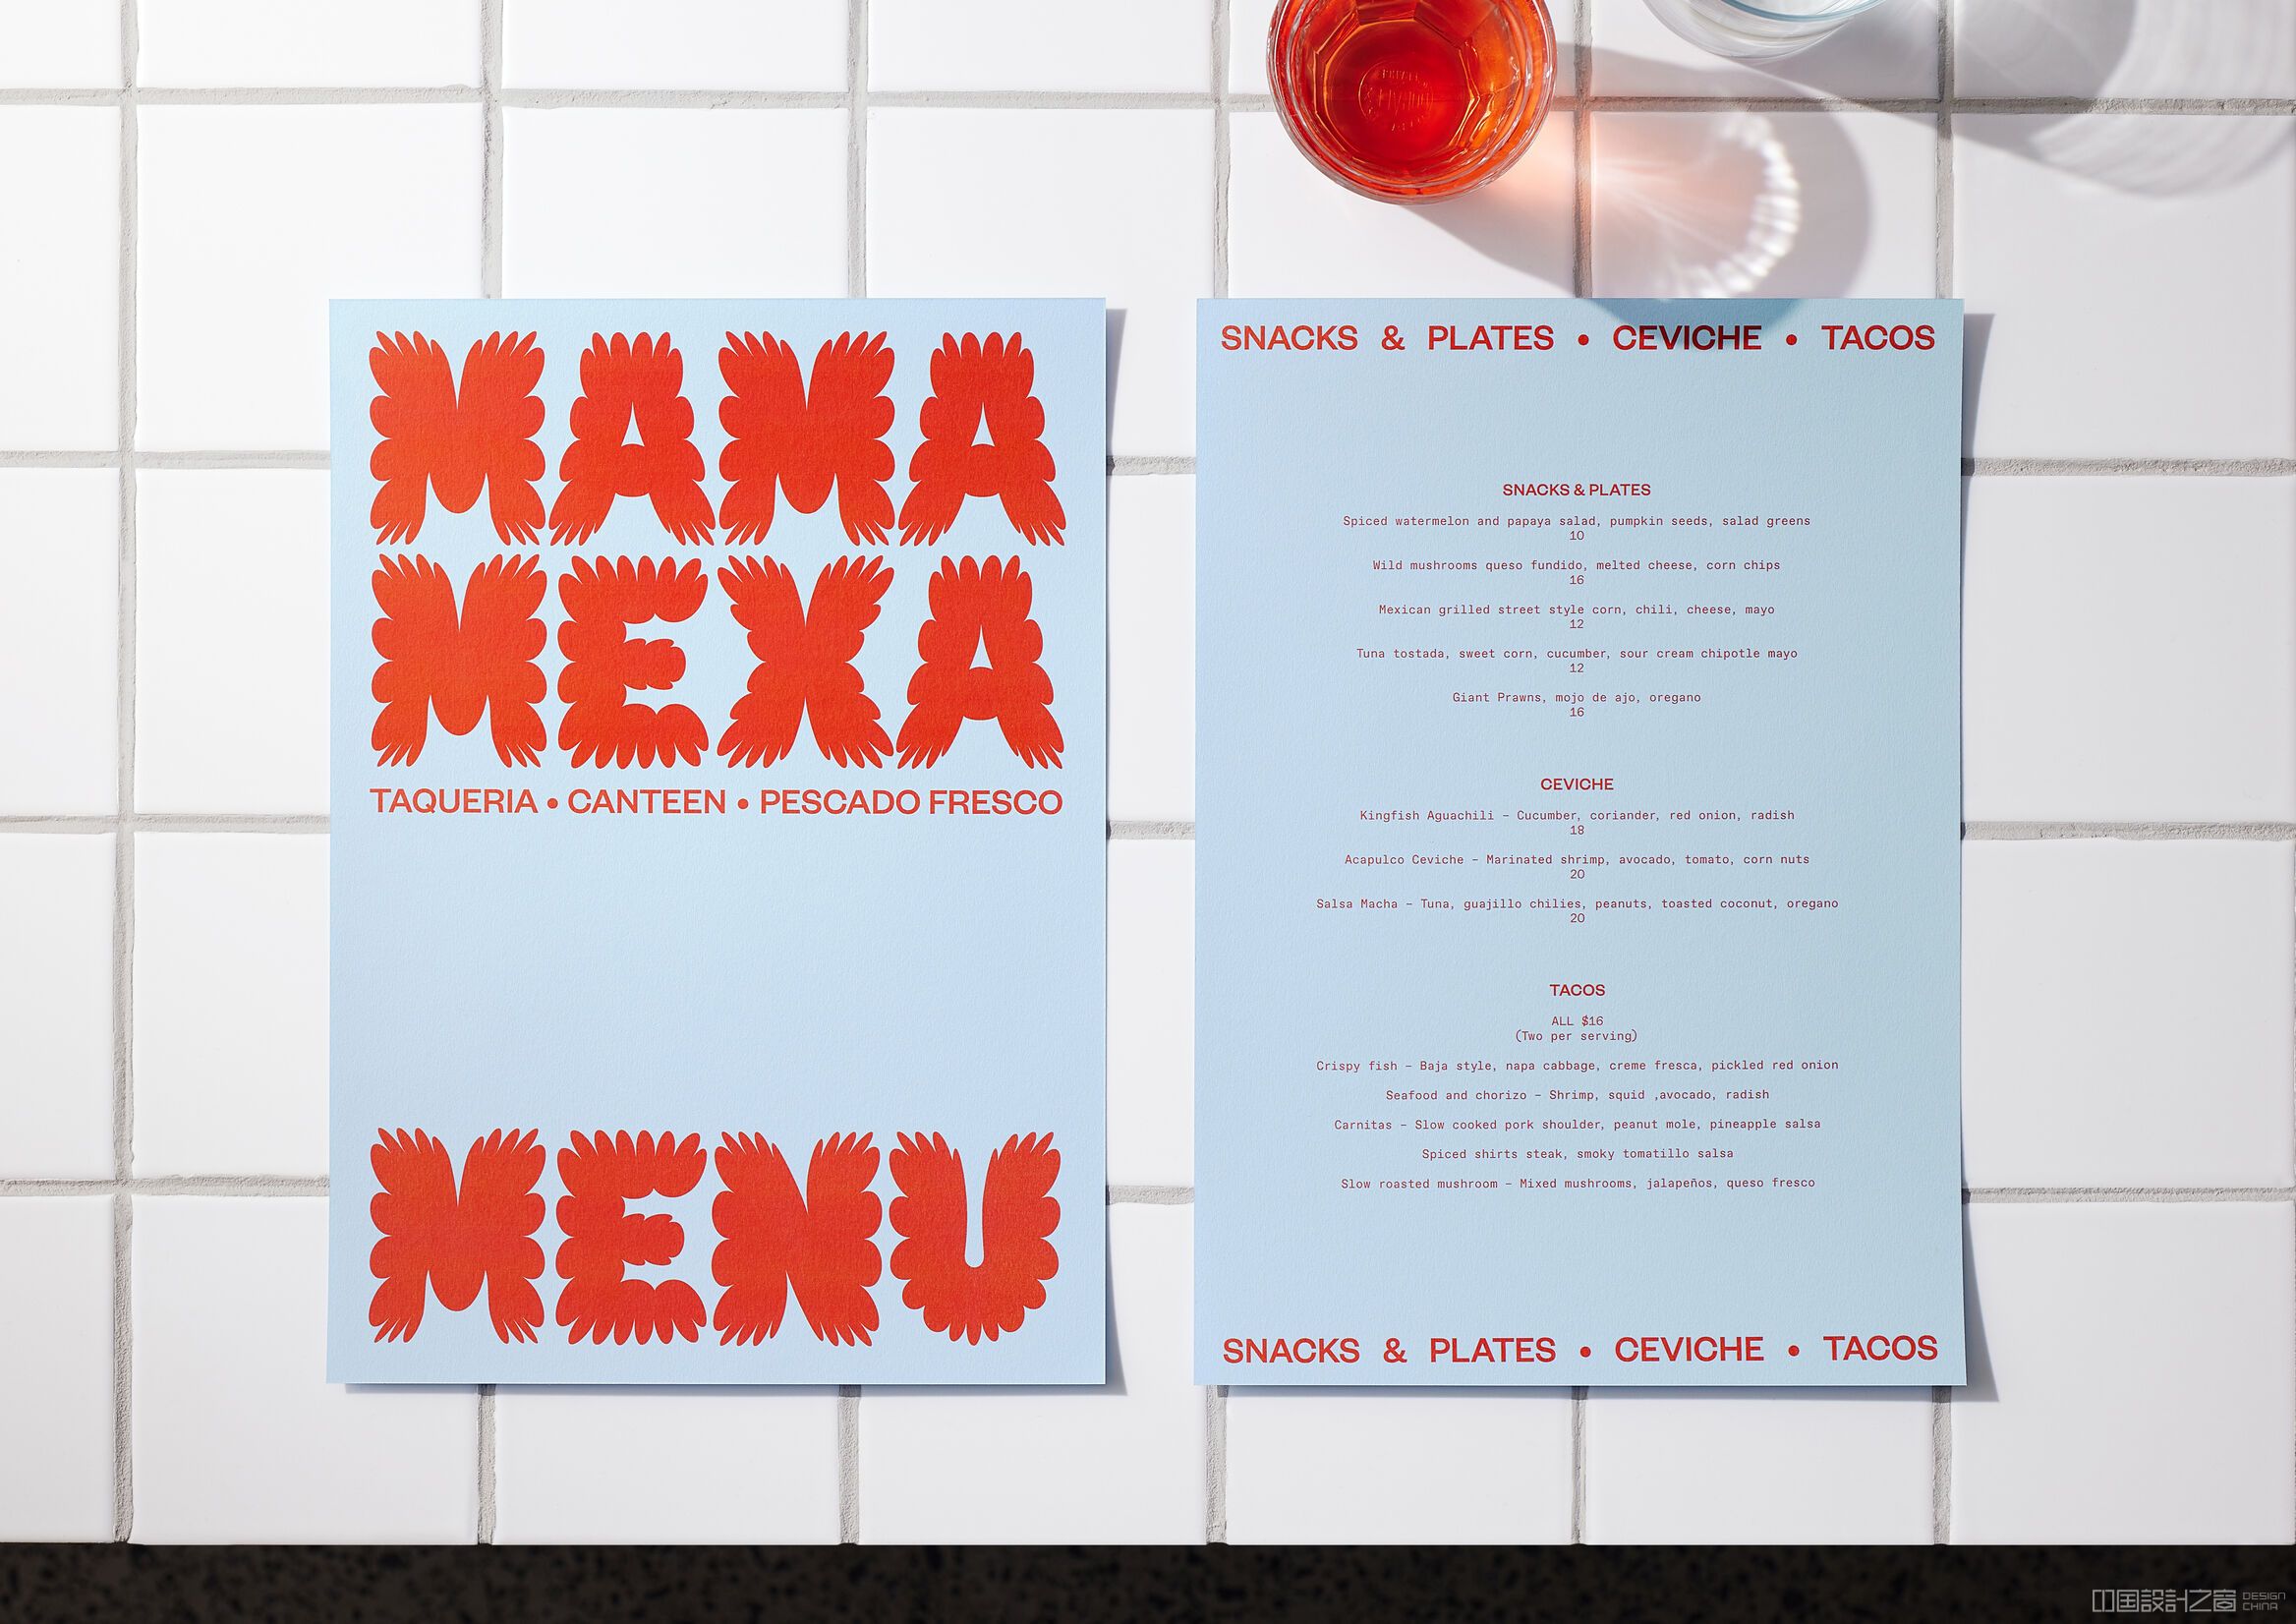 Brand identity and menu design by Seachange for Mama Mexa, an Auckland-ba<em></em>sed taqueria